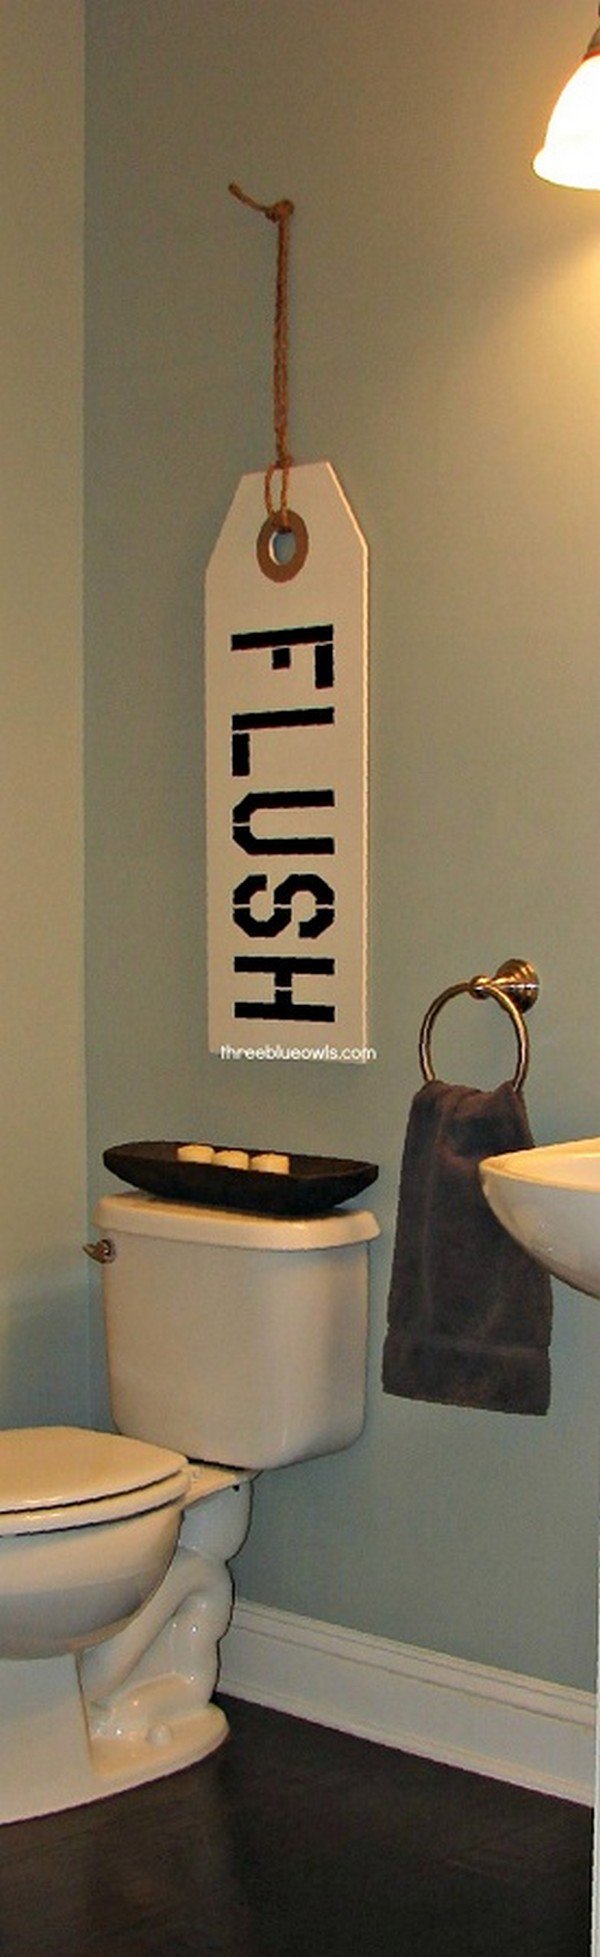 flush toilet sign